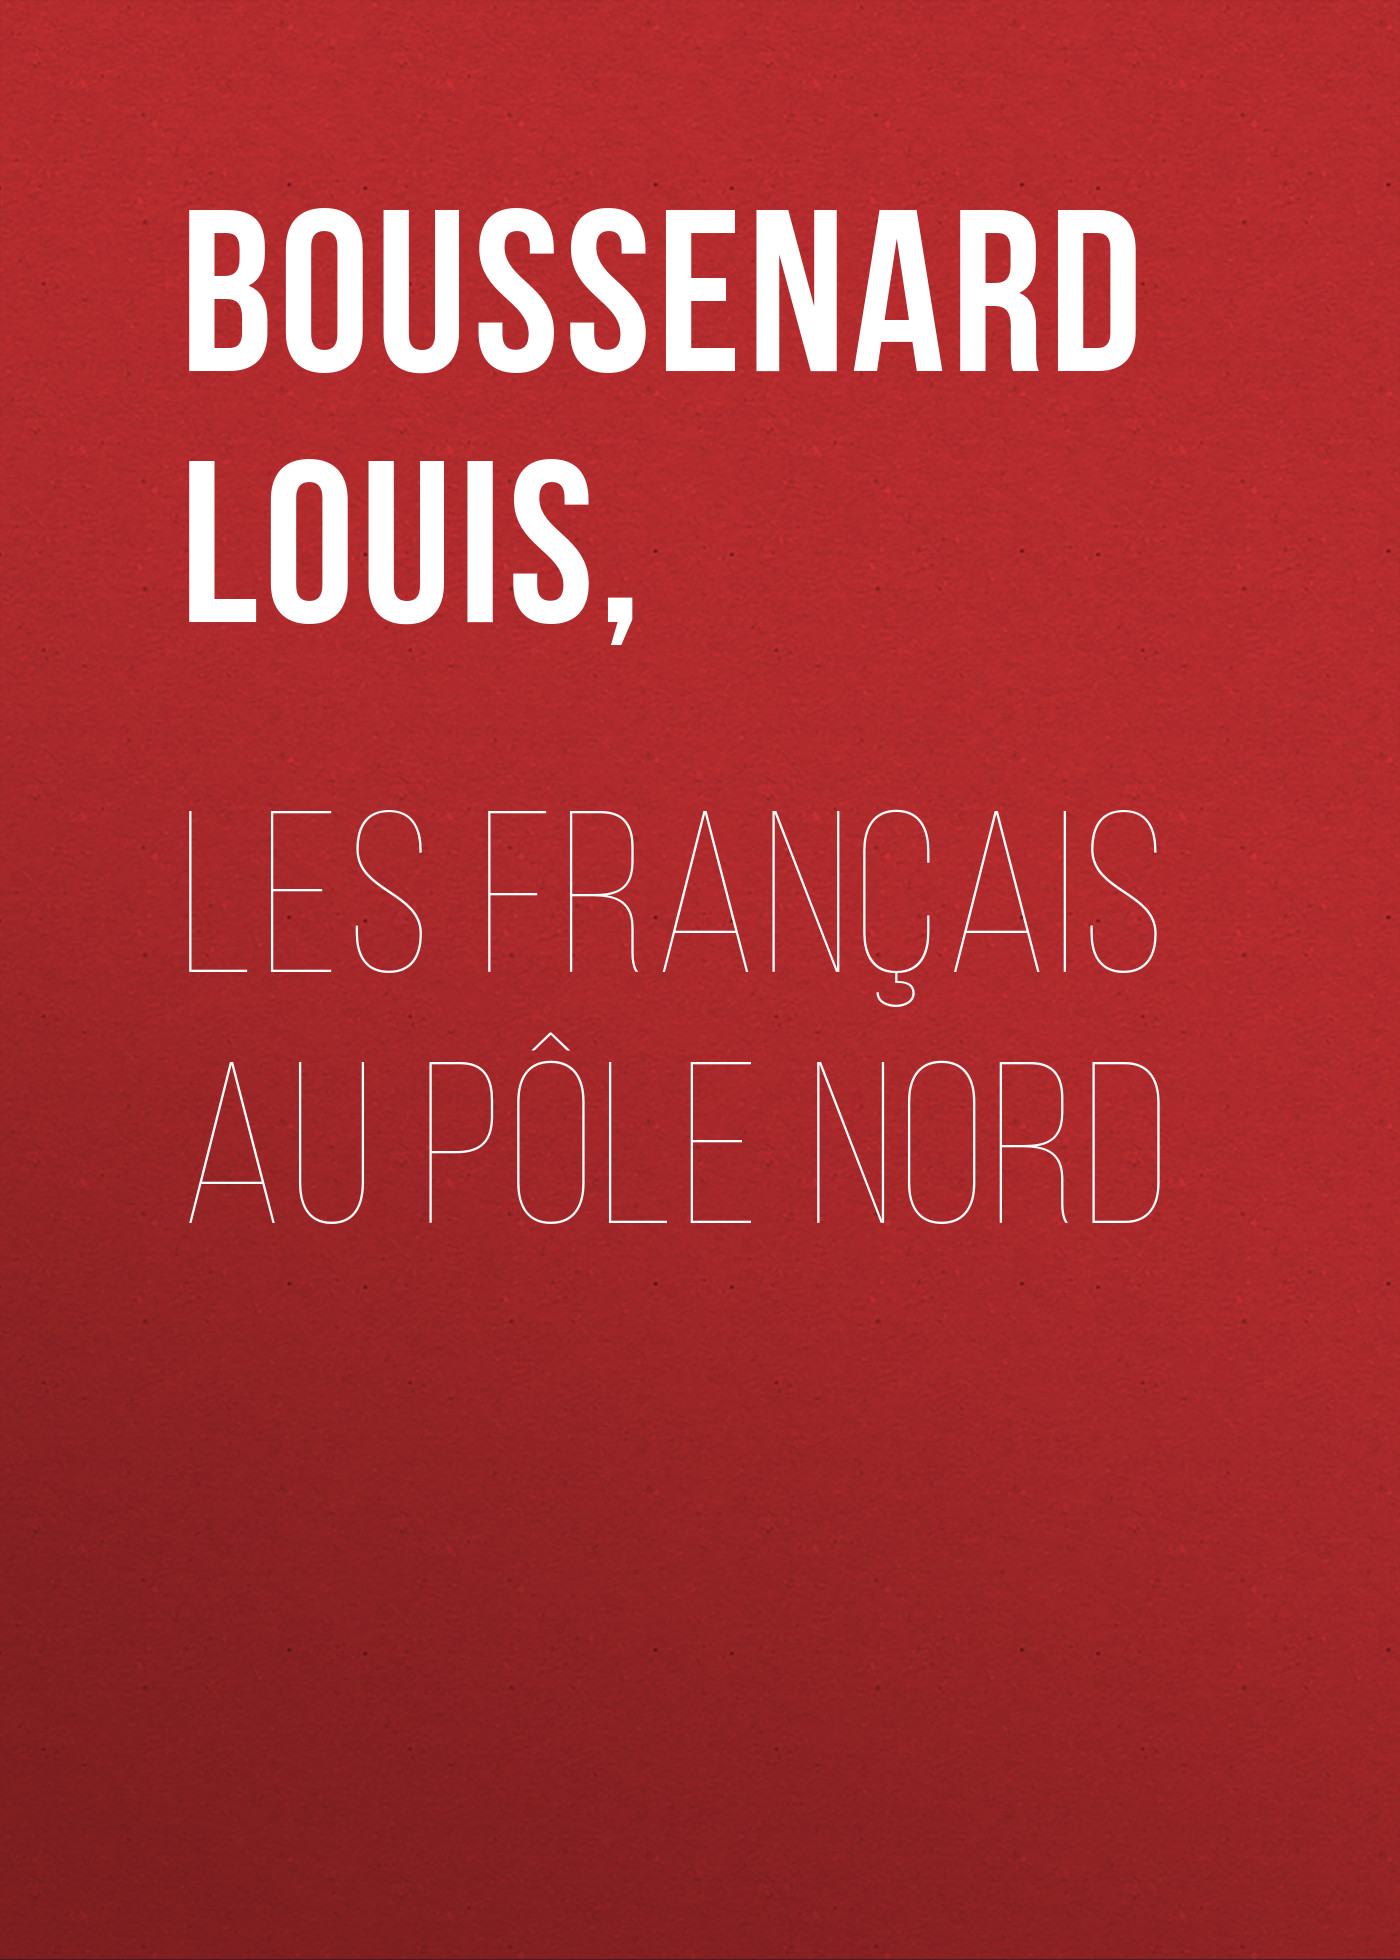 Книга Les français au pôle Nord из серии , созданная Louis Boussenard, может относится к жанру Зарубежная старинная литература, Зарубежная классика. Стоимость электронной книги Les français au pôle Nord с идентификатором 24179524 составляет 0 руб.